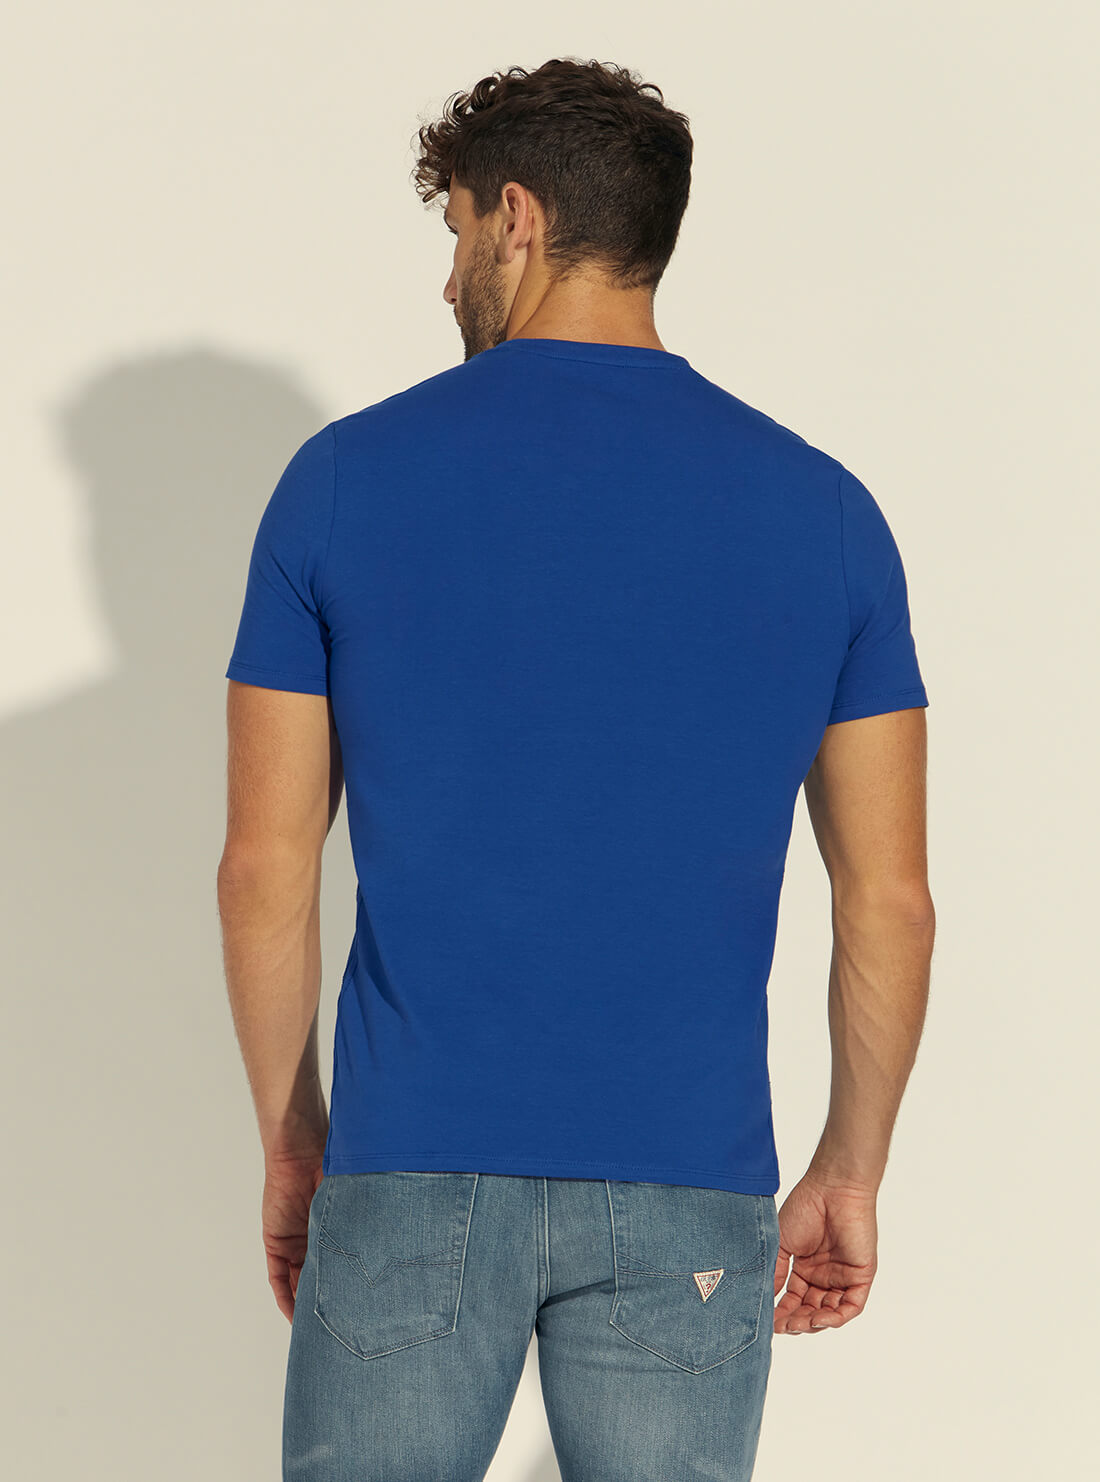 GUESS Mens Blue Dripping Logo T-Shirt M1BI37J1311 Back View